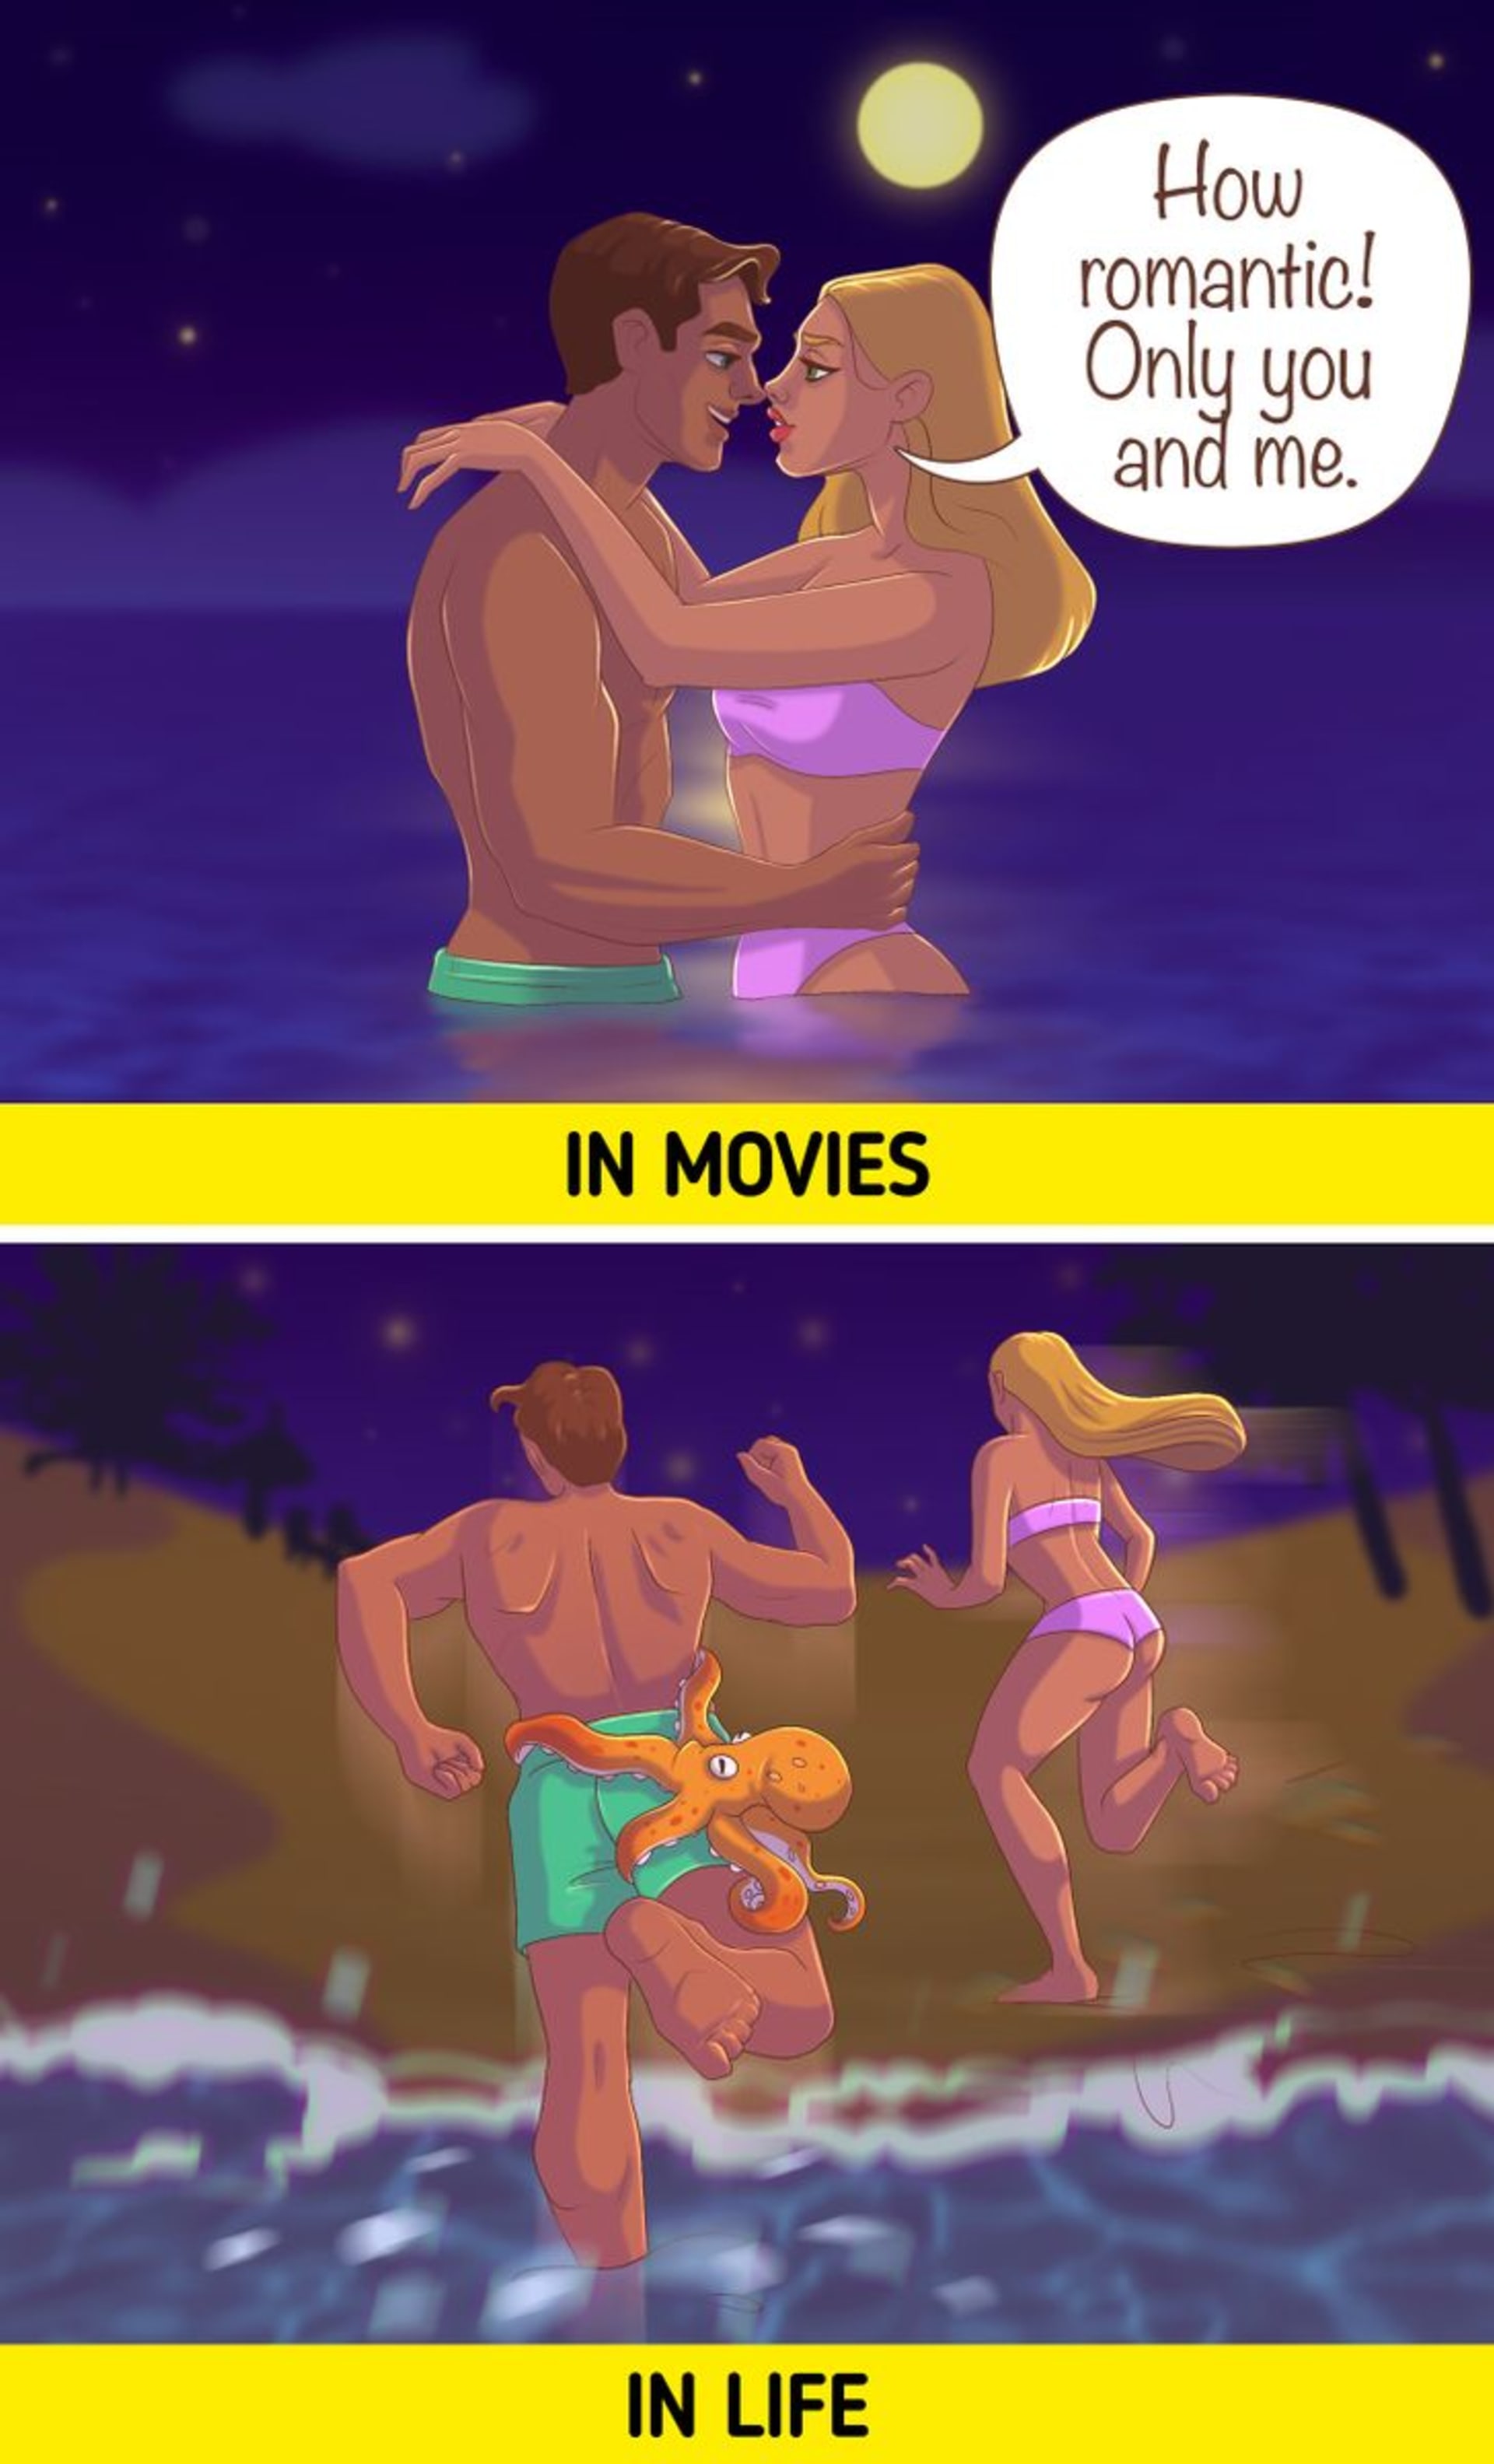 Takhle vypadá vztah ve filmu versus v realitě